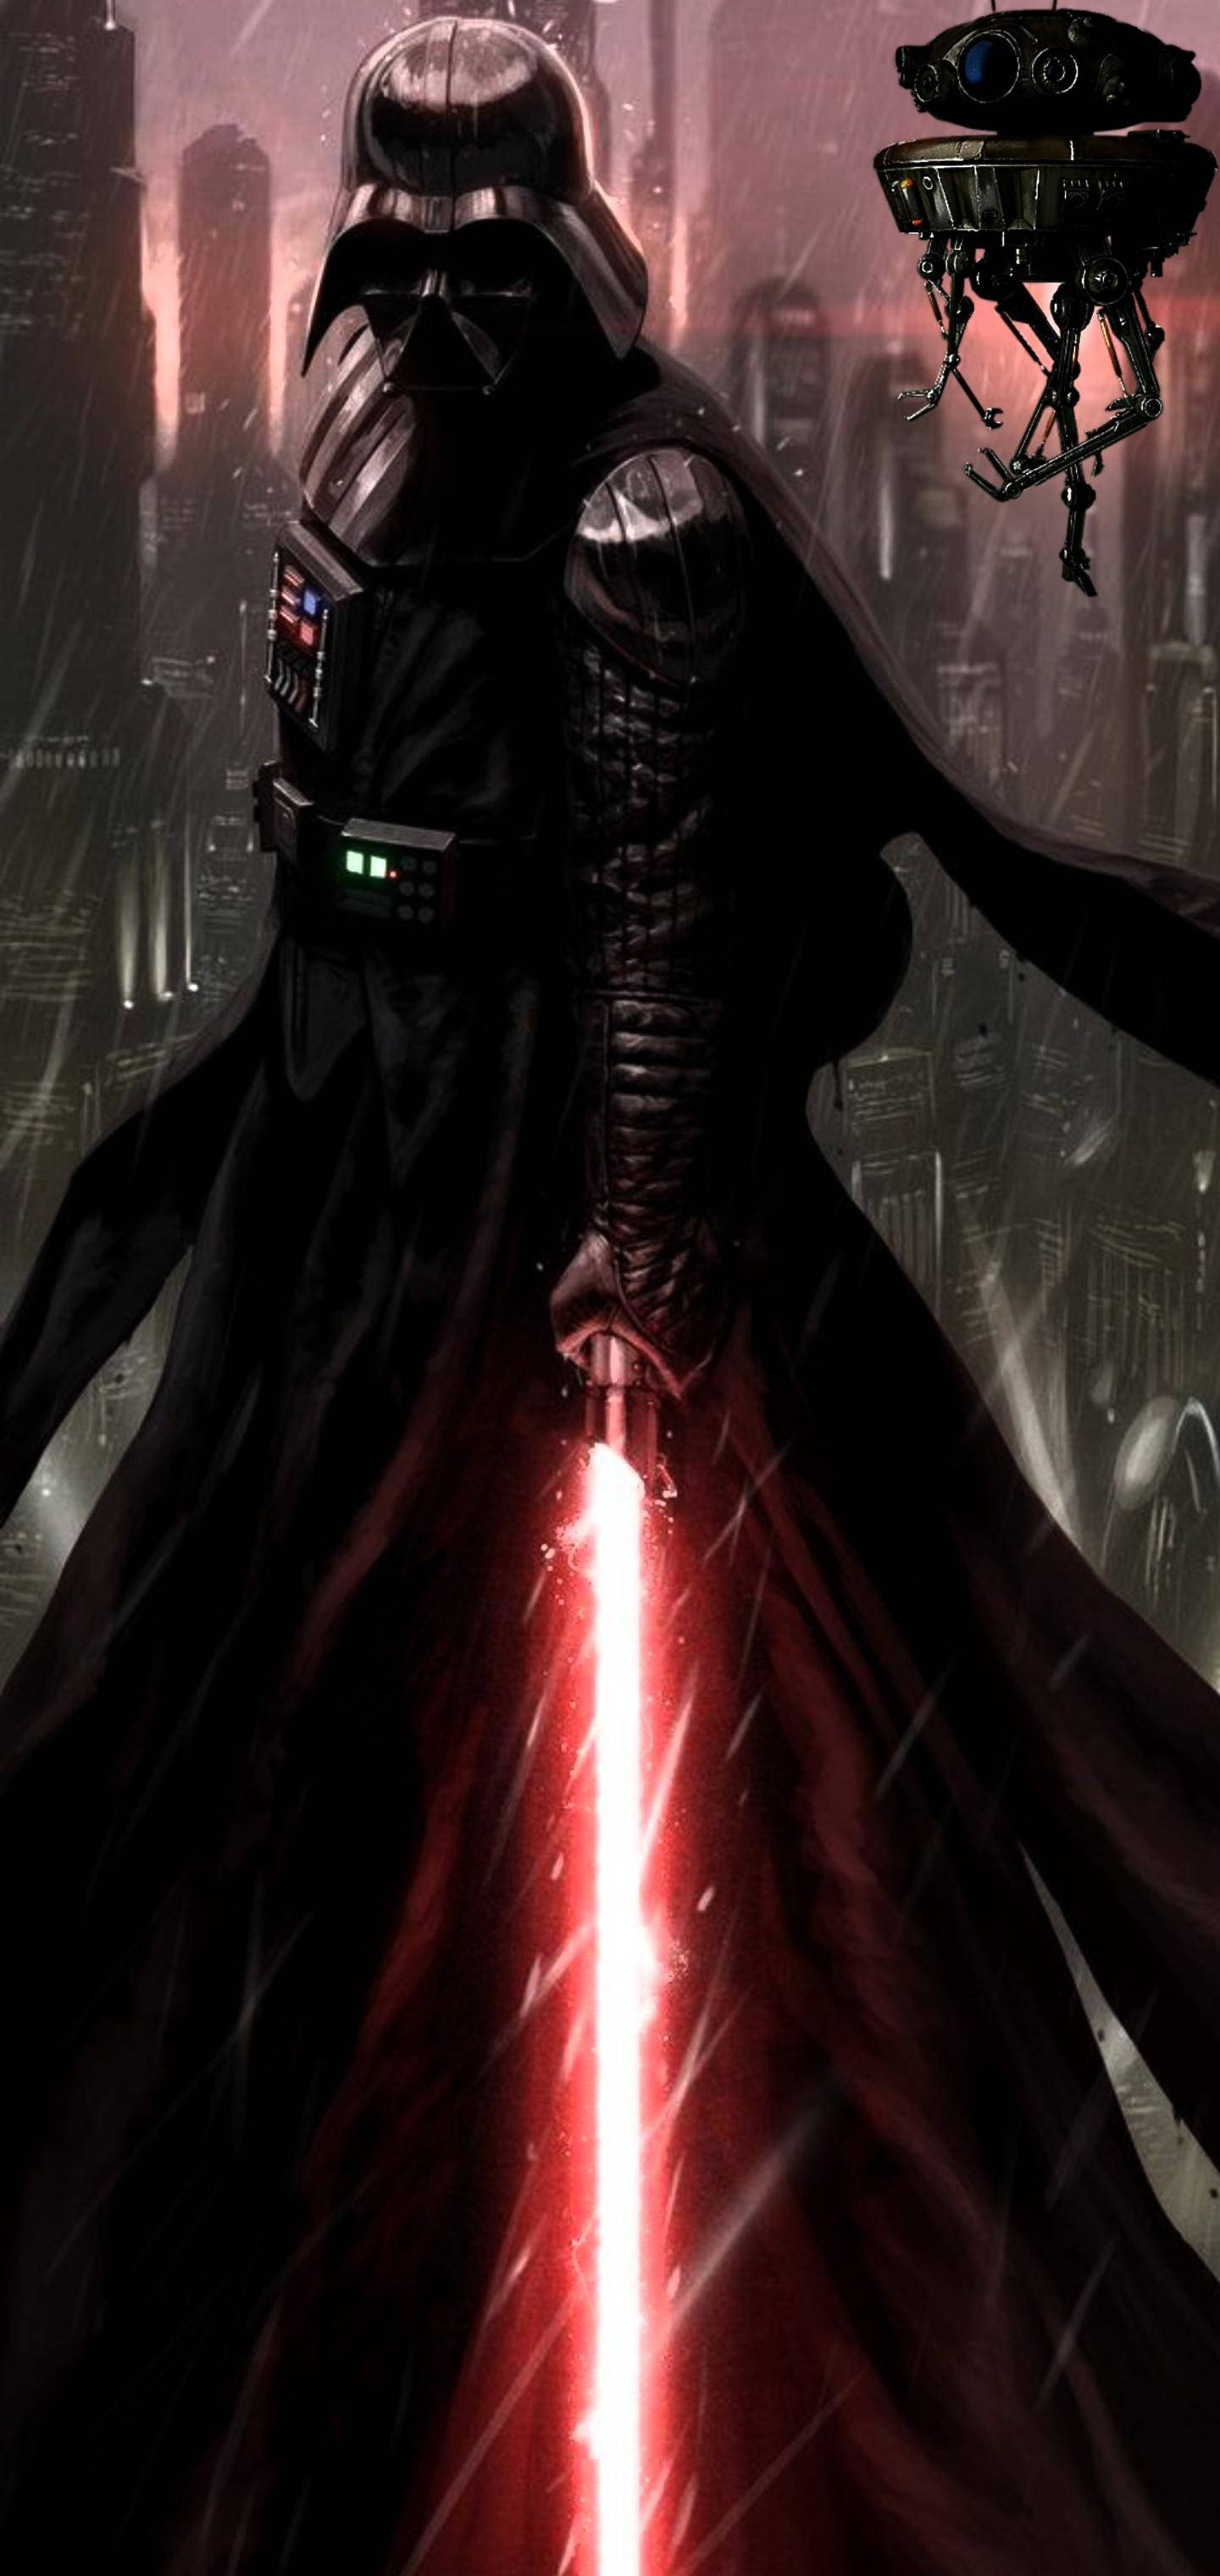 Với Darth Vader là nhân vật trung tâm, các hình nền về Thiên La Đại Sứ không chỉ thu hút sự quan tâm của những người hâm mộ Star Wars mà còn làm say đắm các tín đồ yêu thích viễn tưởng. Hãy khám phá bộ sưu tập hình nền Darth Vader ngay hôm nay.